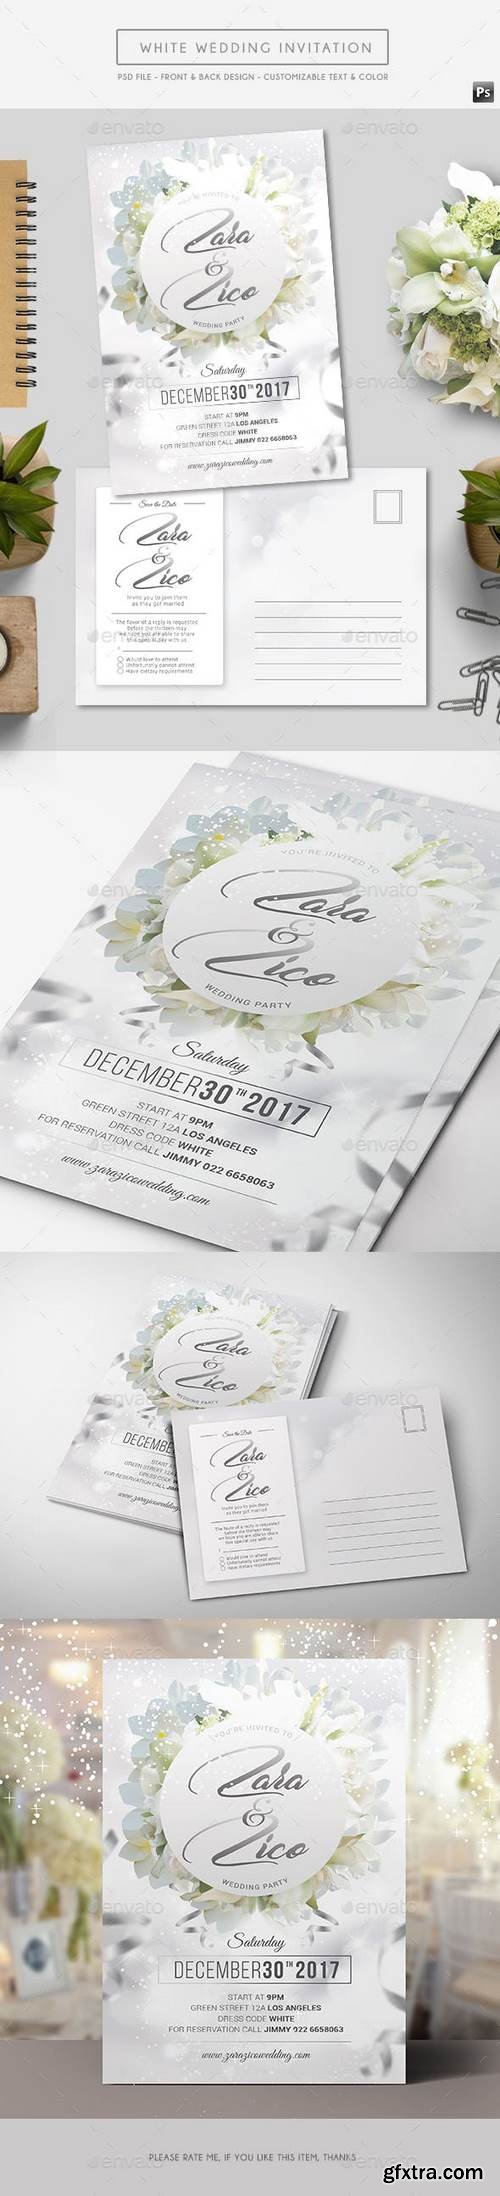 Graphicriver - White Wedding Invitation 17494640